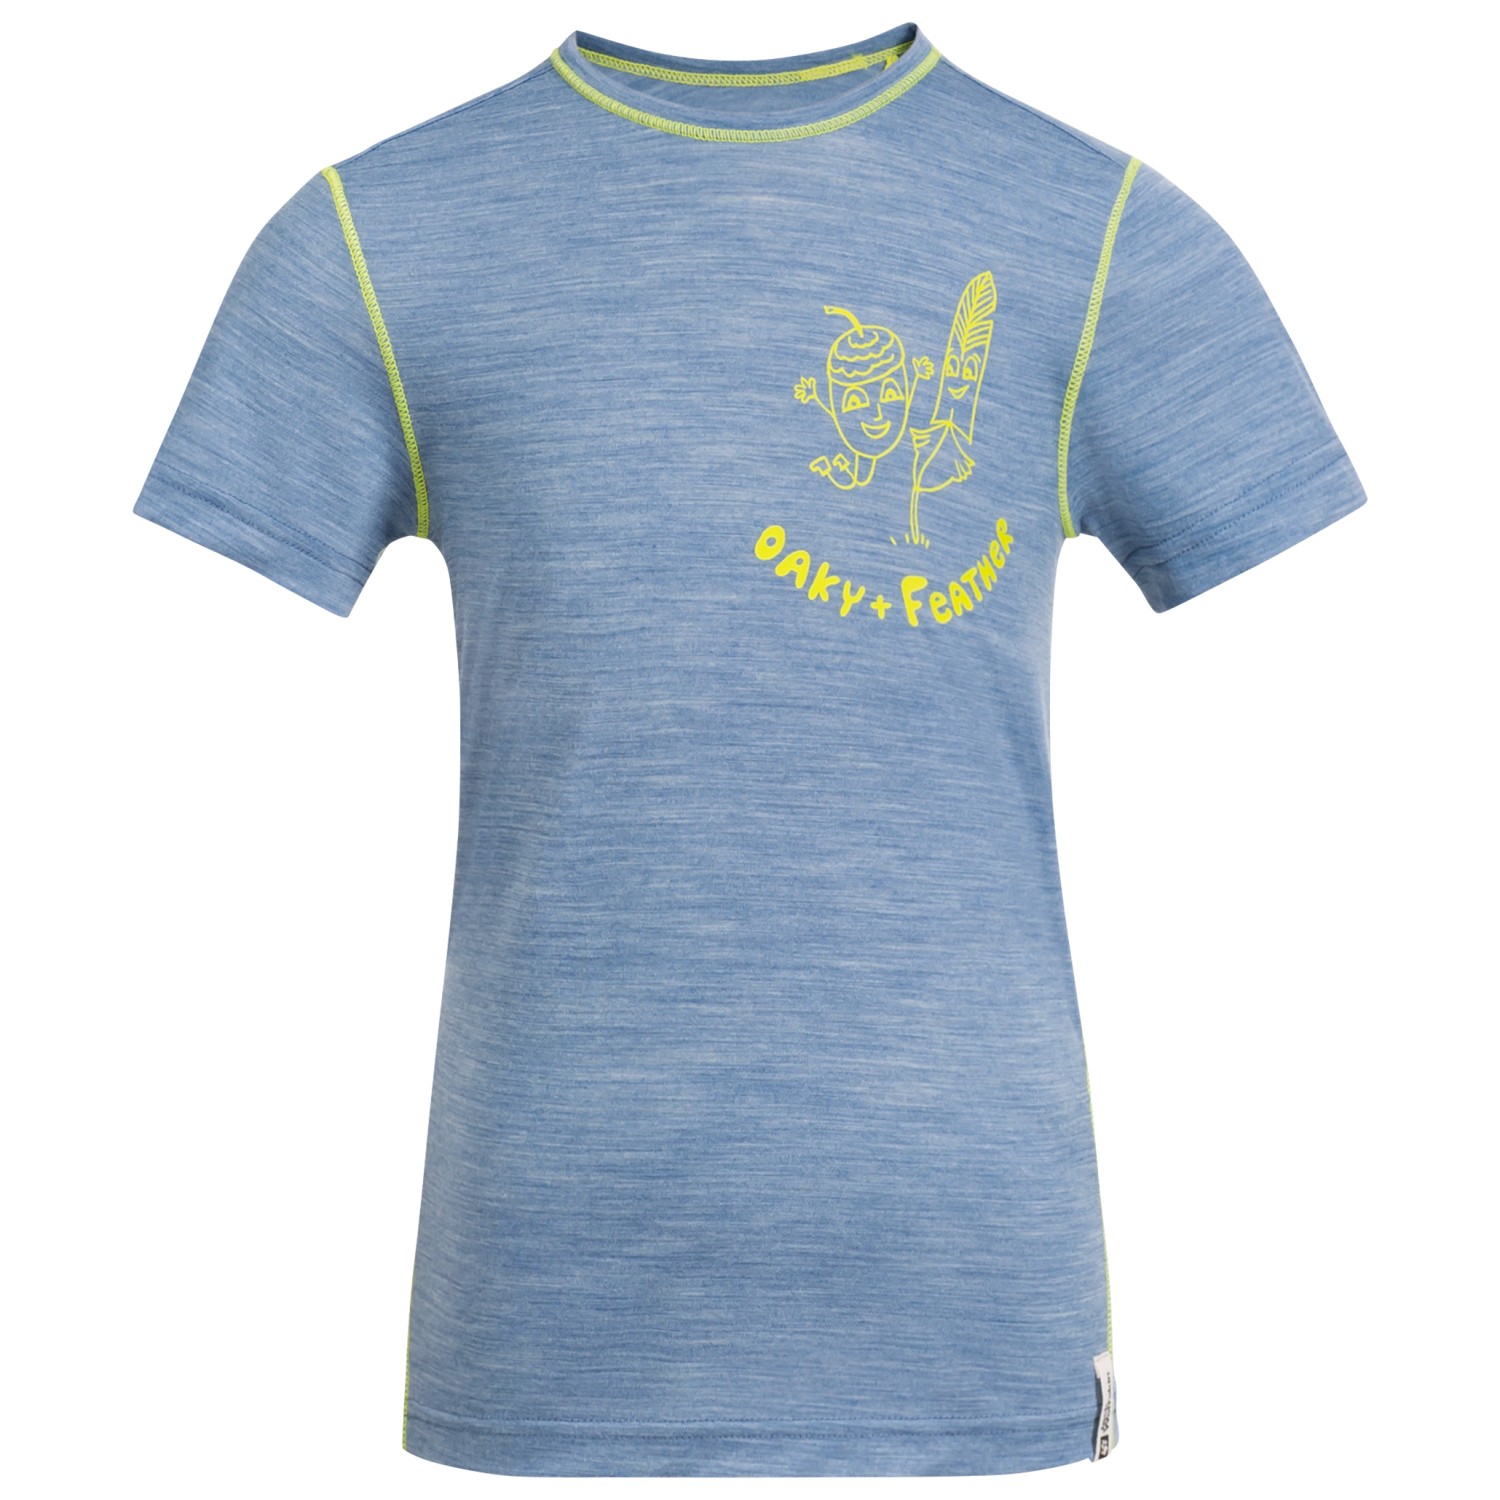 Рубашка из мериноса Jack Wolfskin Kid's Merino Graphic T, цвет Elemental Blue